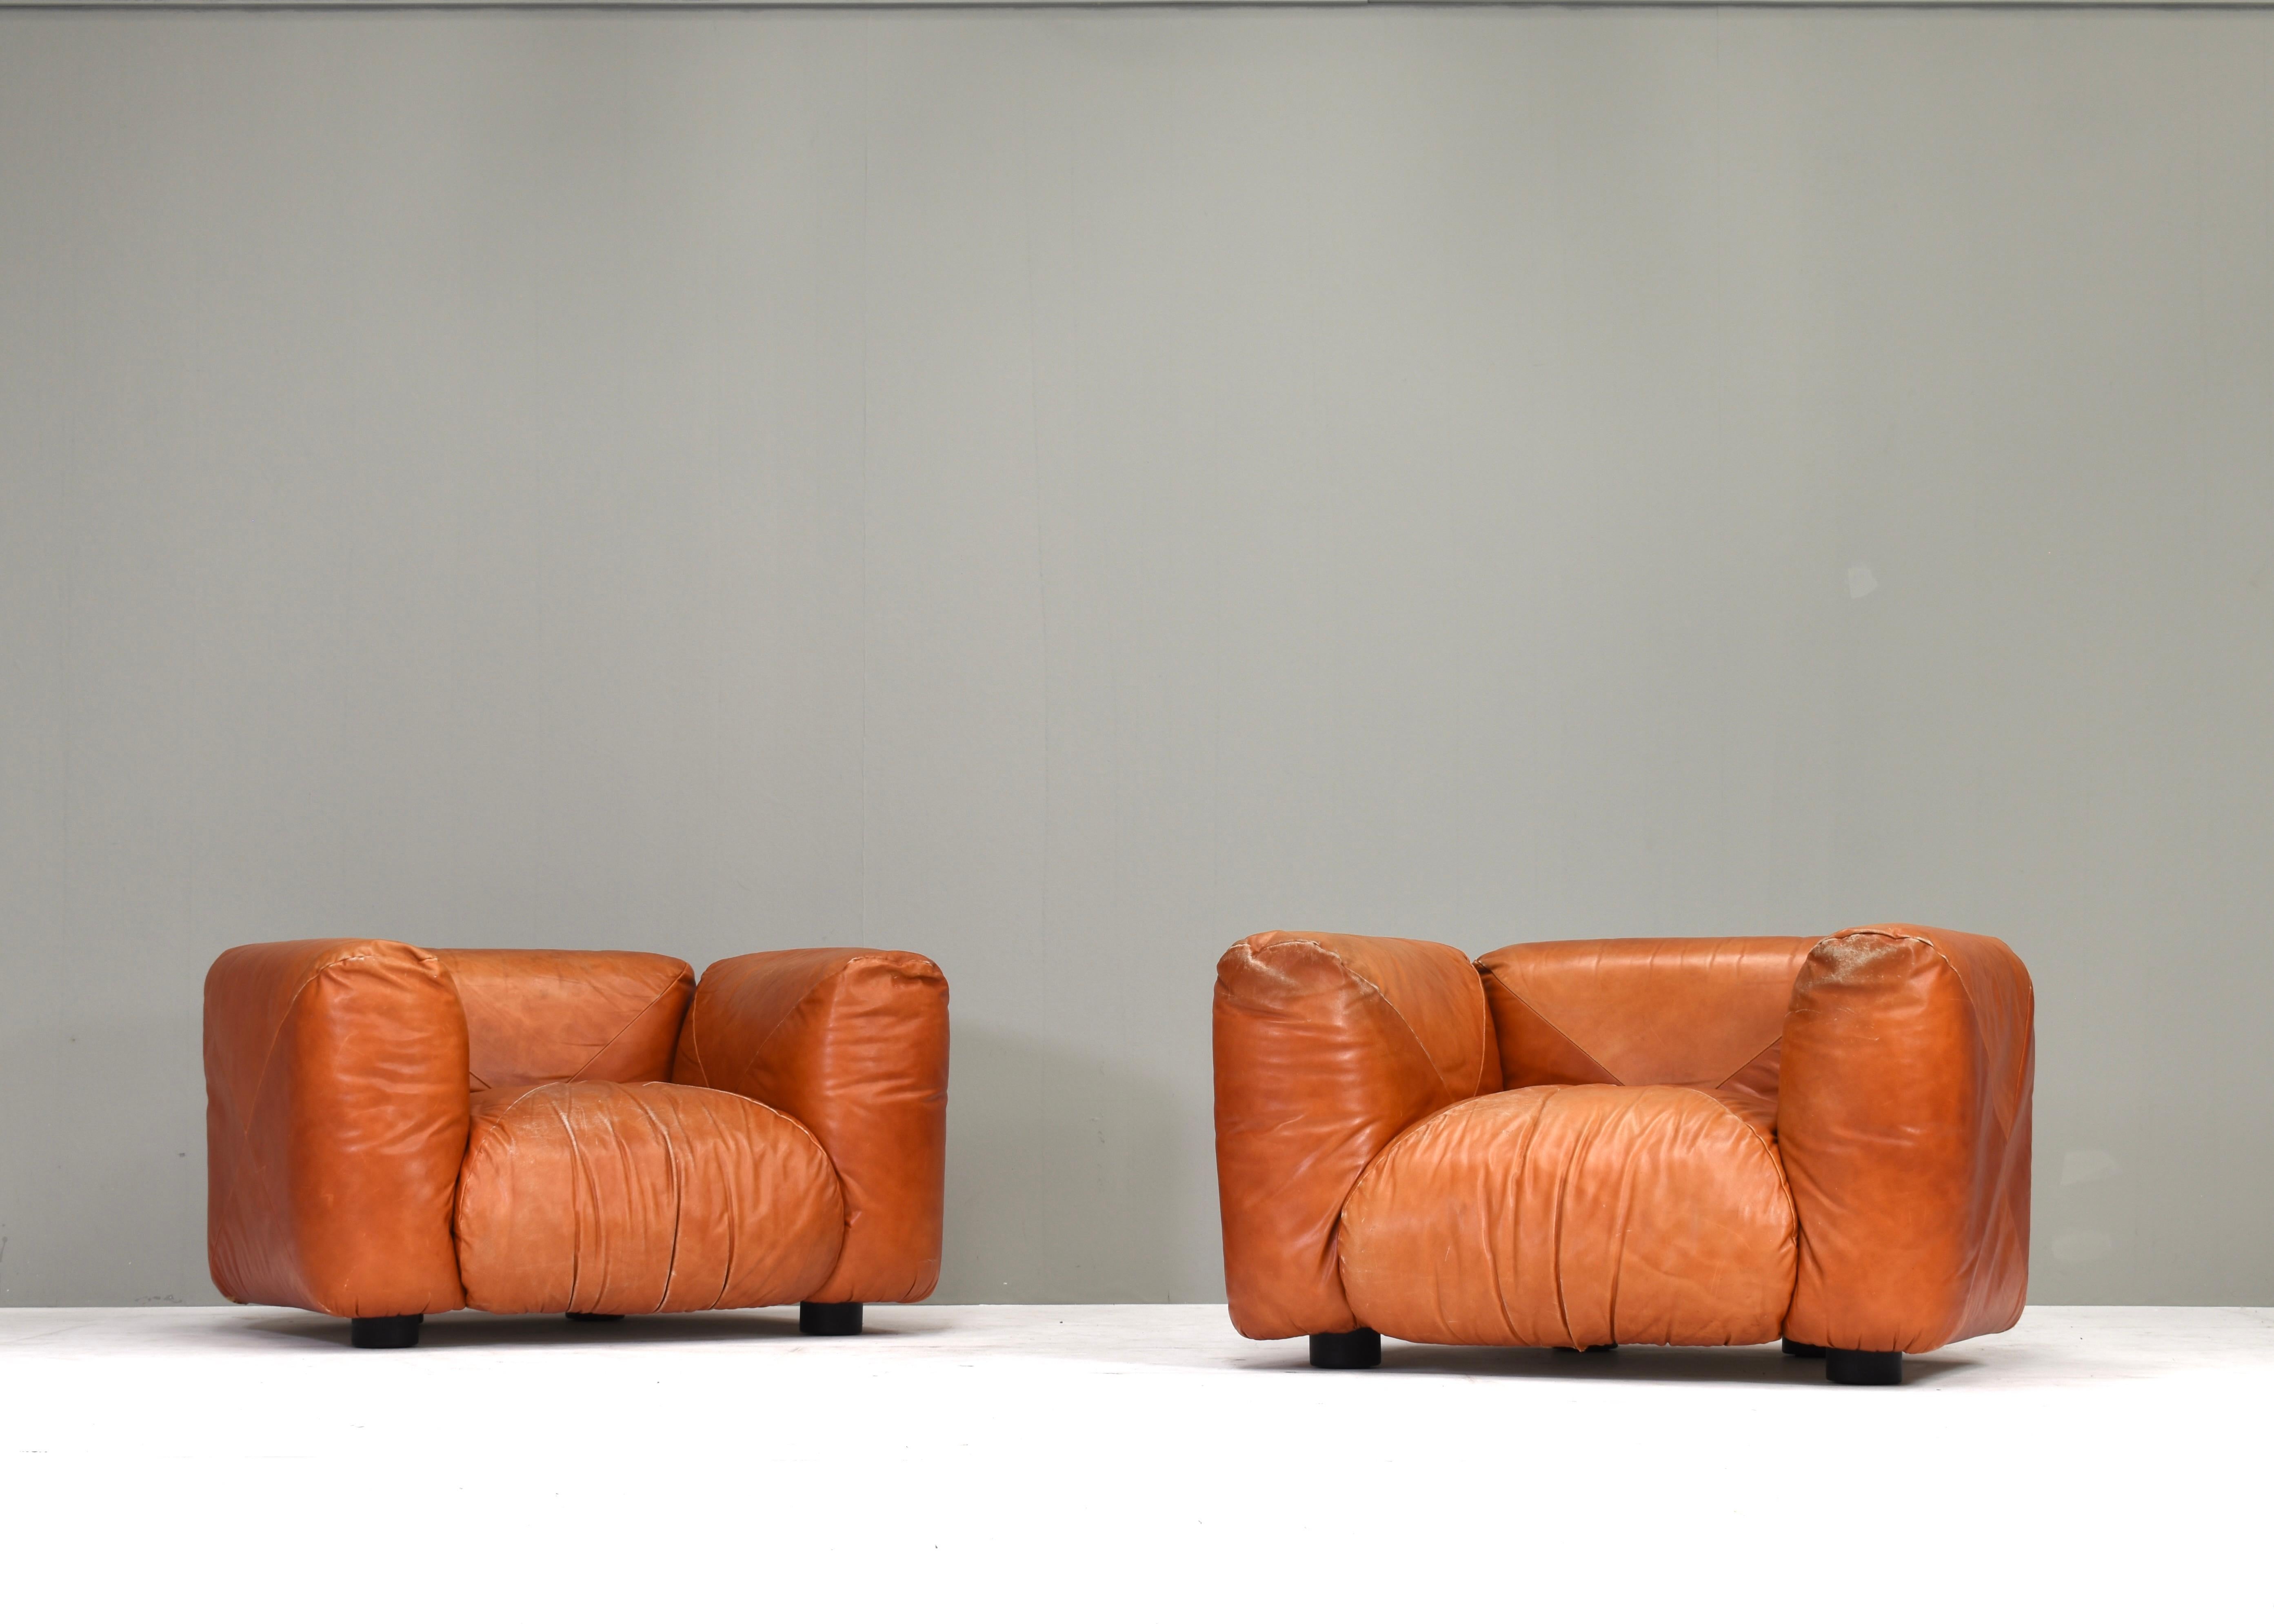 Les chaises longues et le canapé Marius&Marius ont été conçus par l'architecte et designer italien Mario Marenco en 1970. Il est connu pour ses designs distinctifs et innovants, mettant en scène de grands coussins pelucheux qui semblent flotter sur